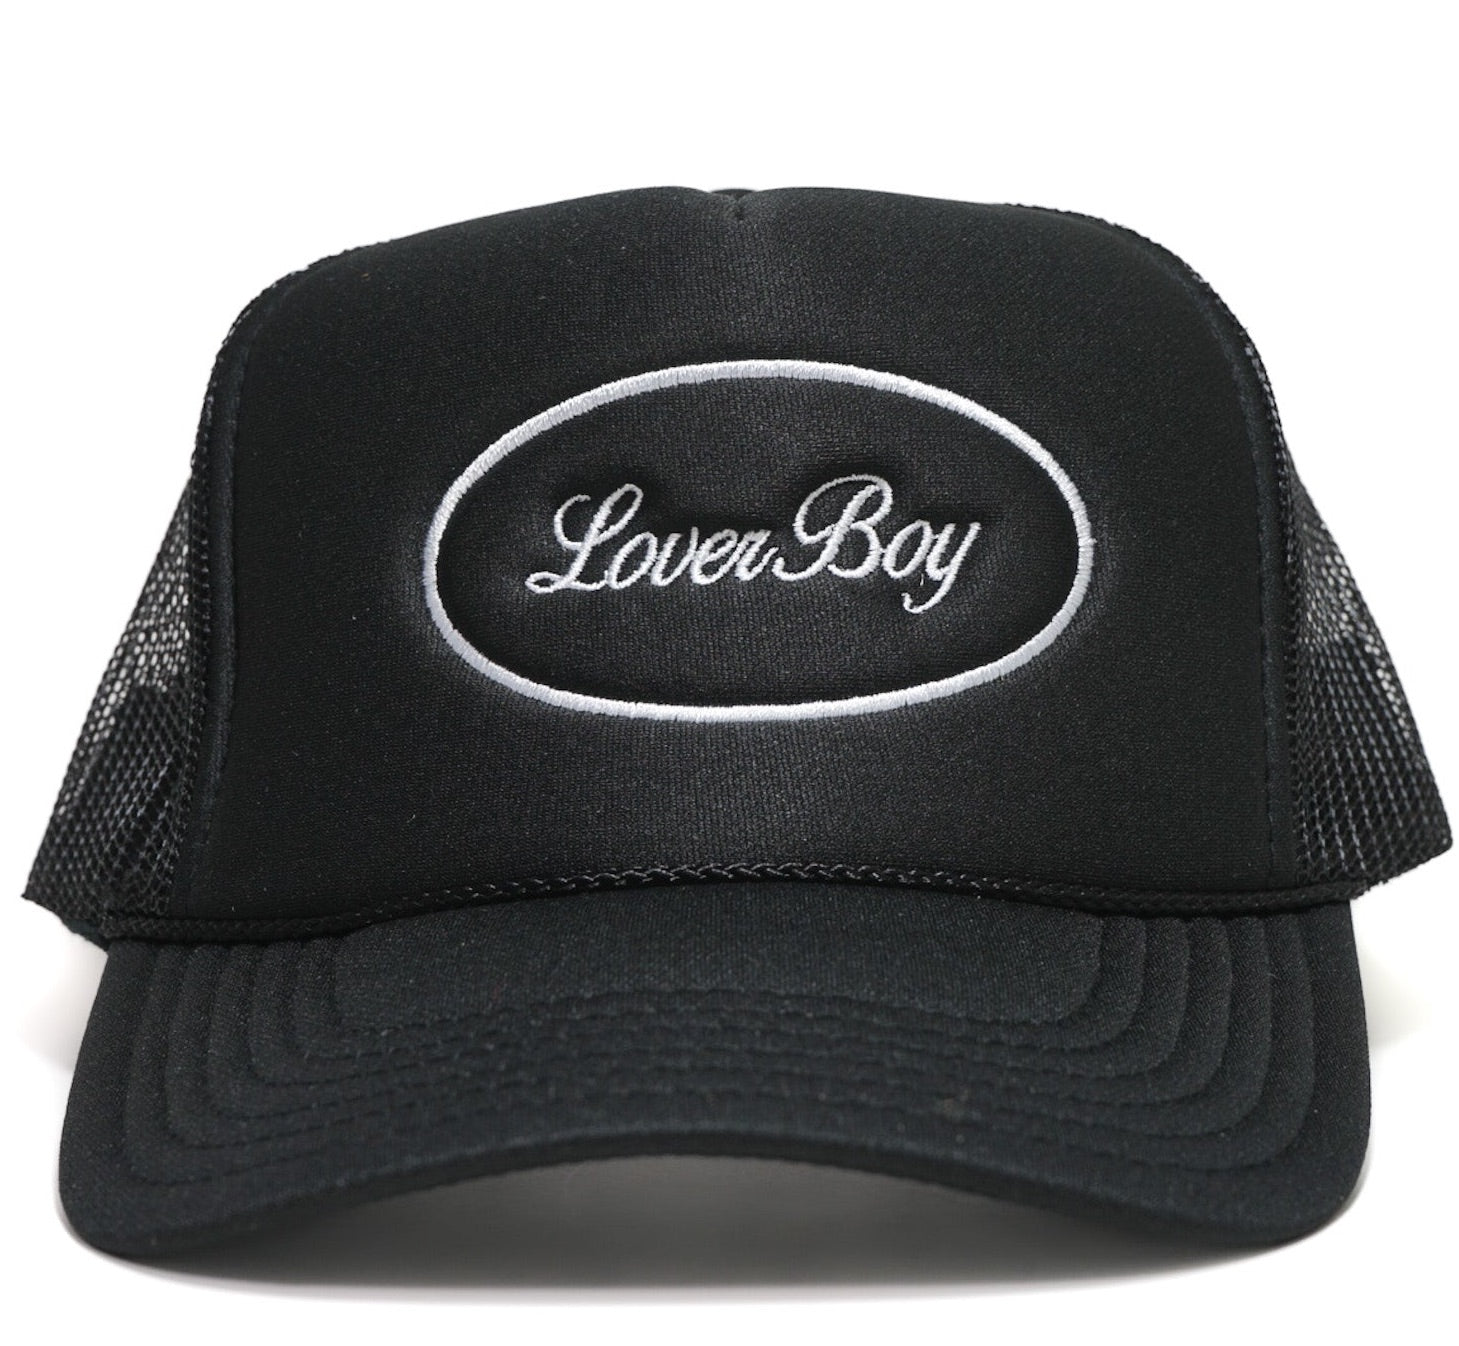 Original LoverBoy Trucker (Black/White)